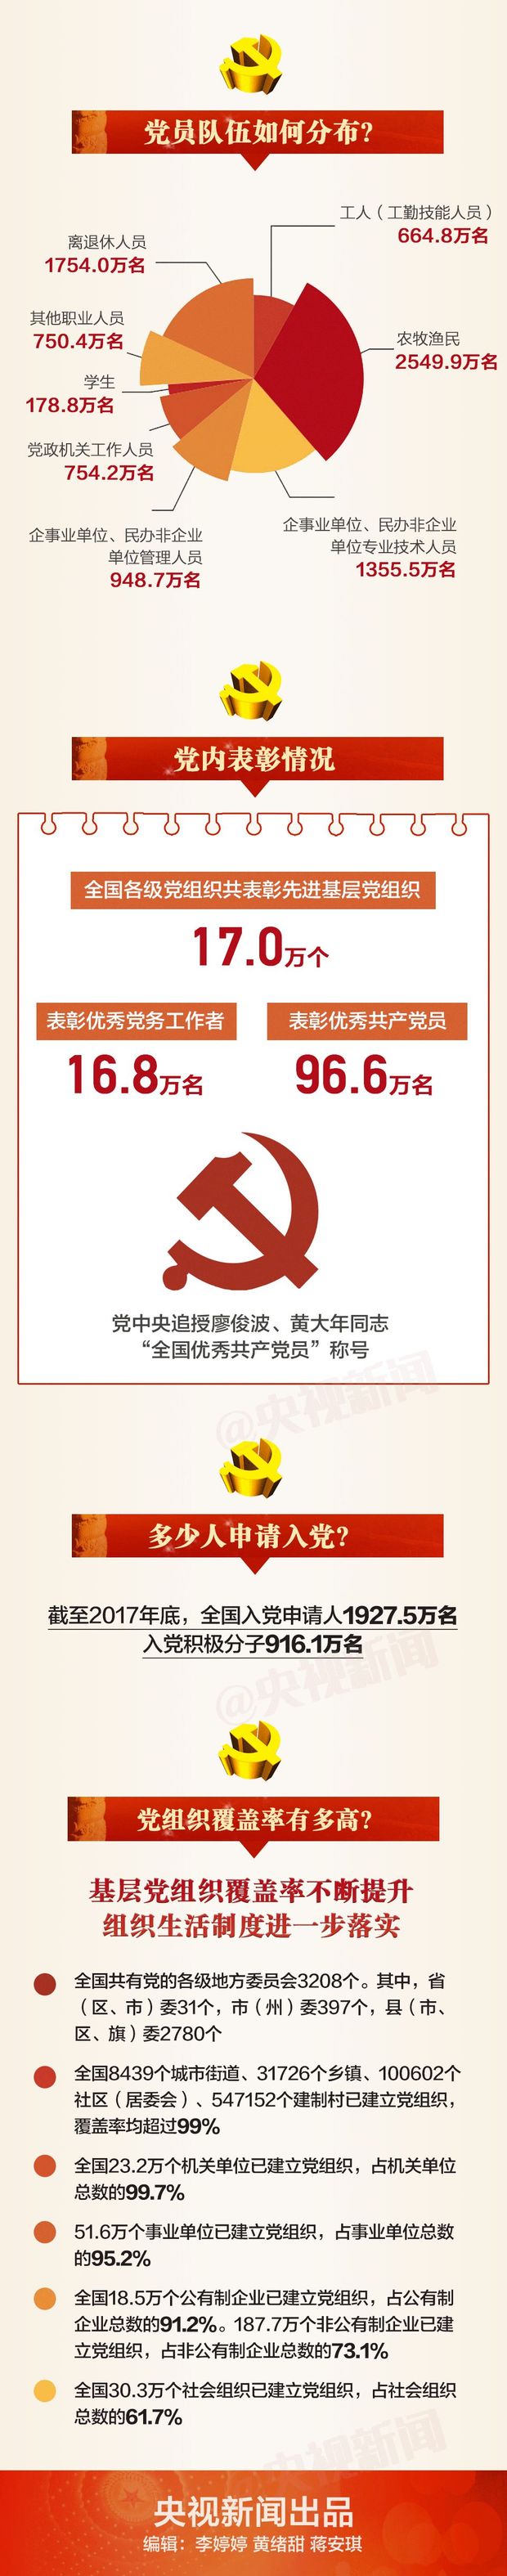 一张图，带你读懂2017年中国共产党党内统计公报